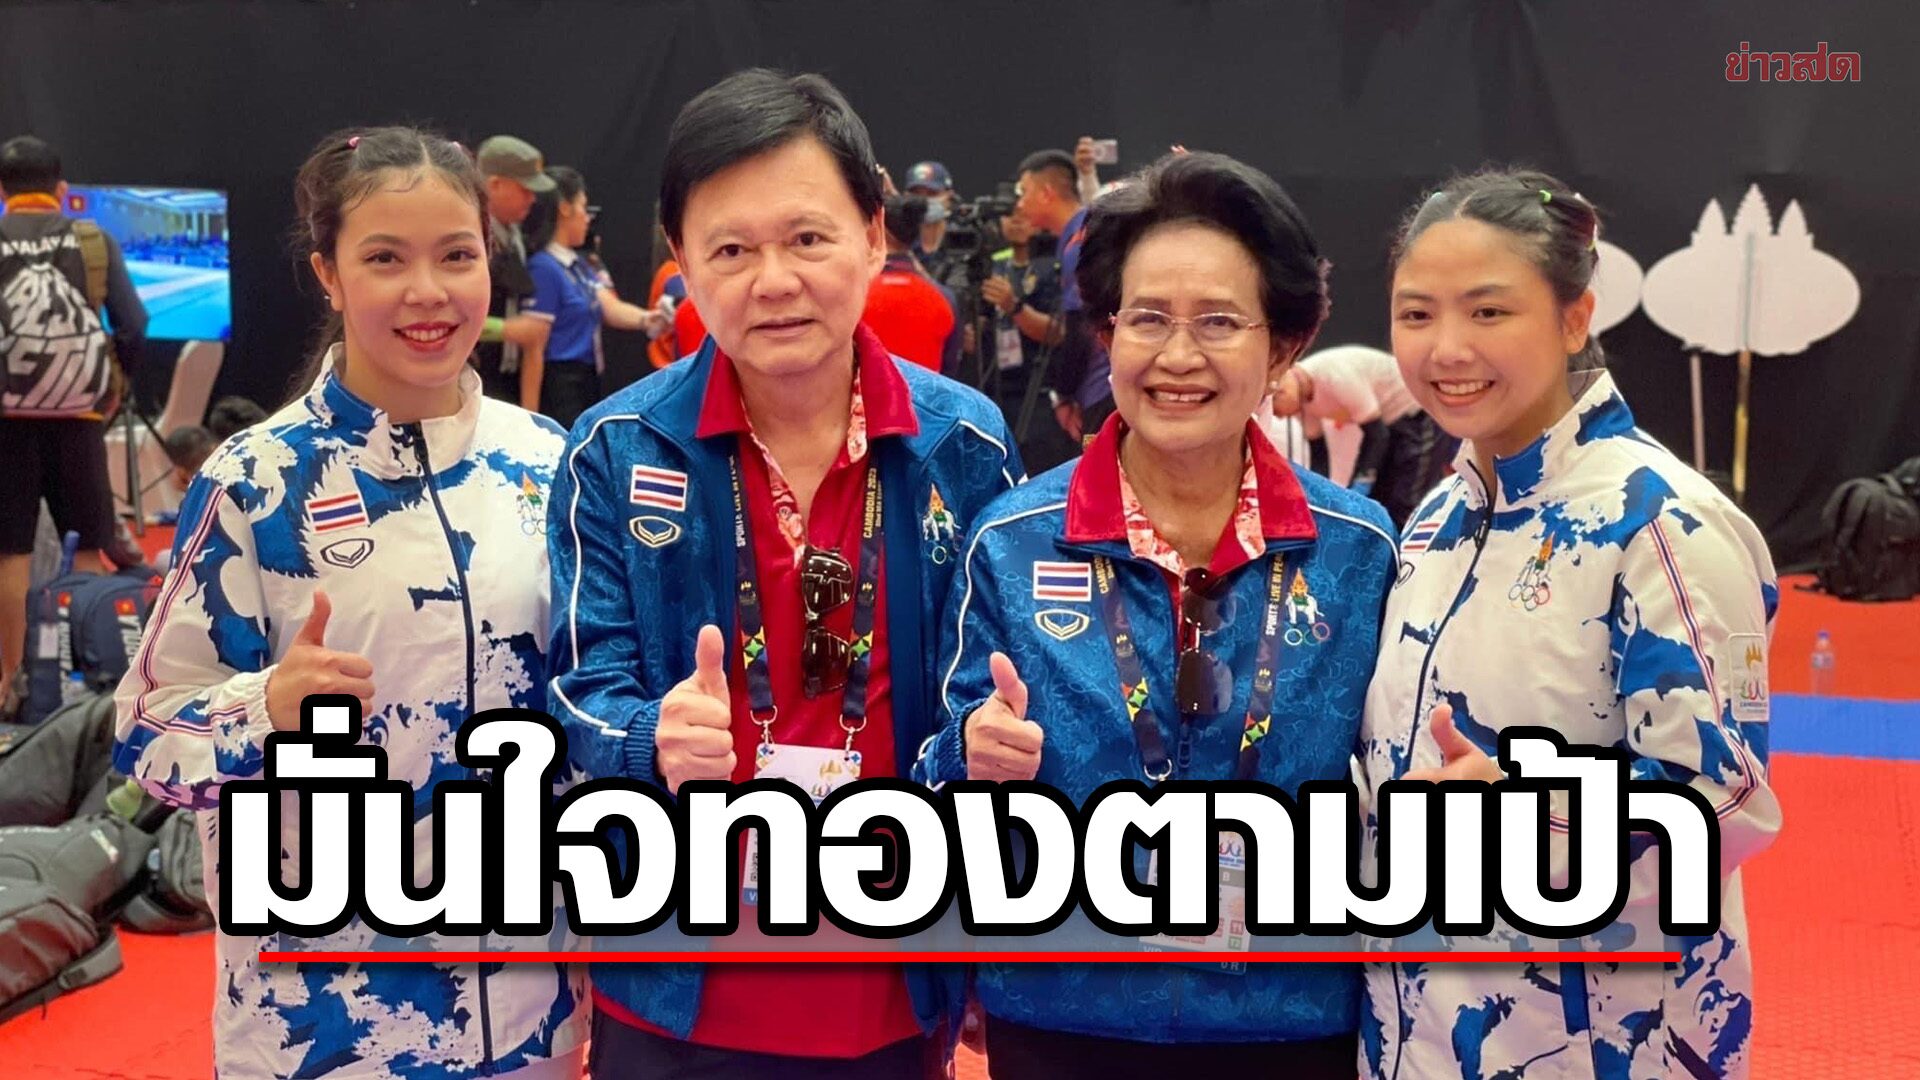 บิ๊กต้อม มั่นใจทัพนักกีฬาไทยเก็บทองตามเป้า – ยันชาวกัมพูชาเป็นมิตรยิ้มแย้มดี